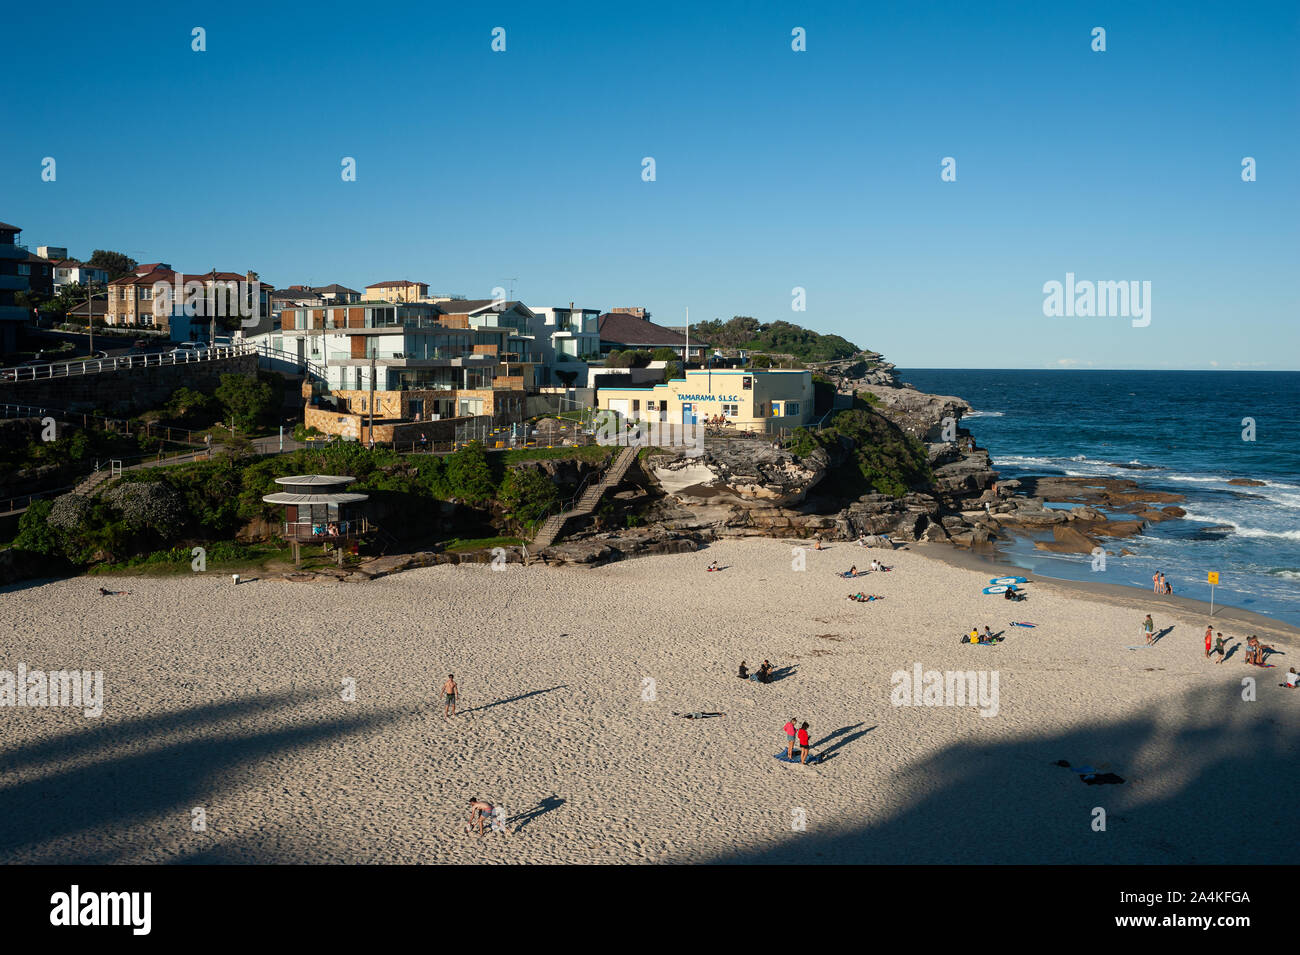 24.09.2019, Sydney, New South Wales, Australia - vista elevada de Tamarama Beach bajo un cielo azul claro con edificios en el fondo. Foto de stock